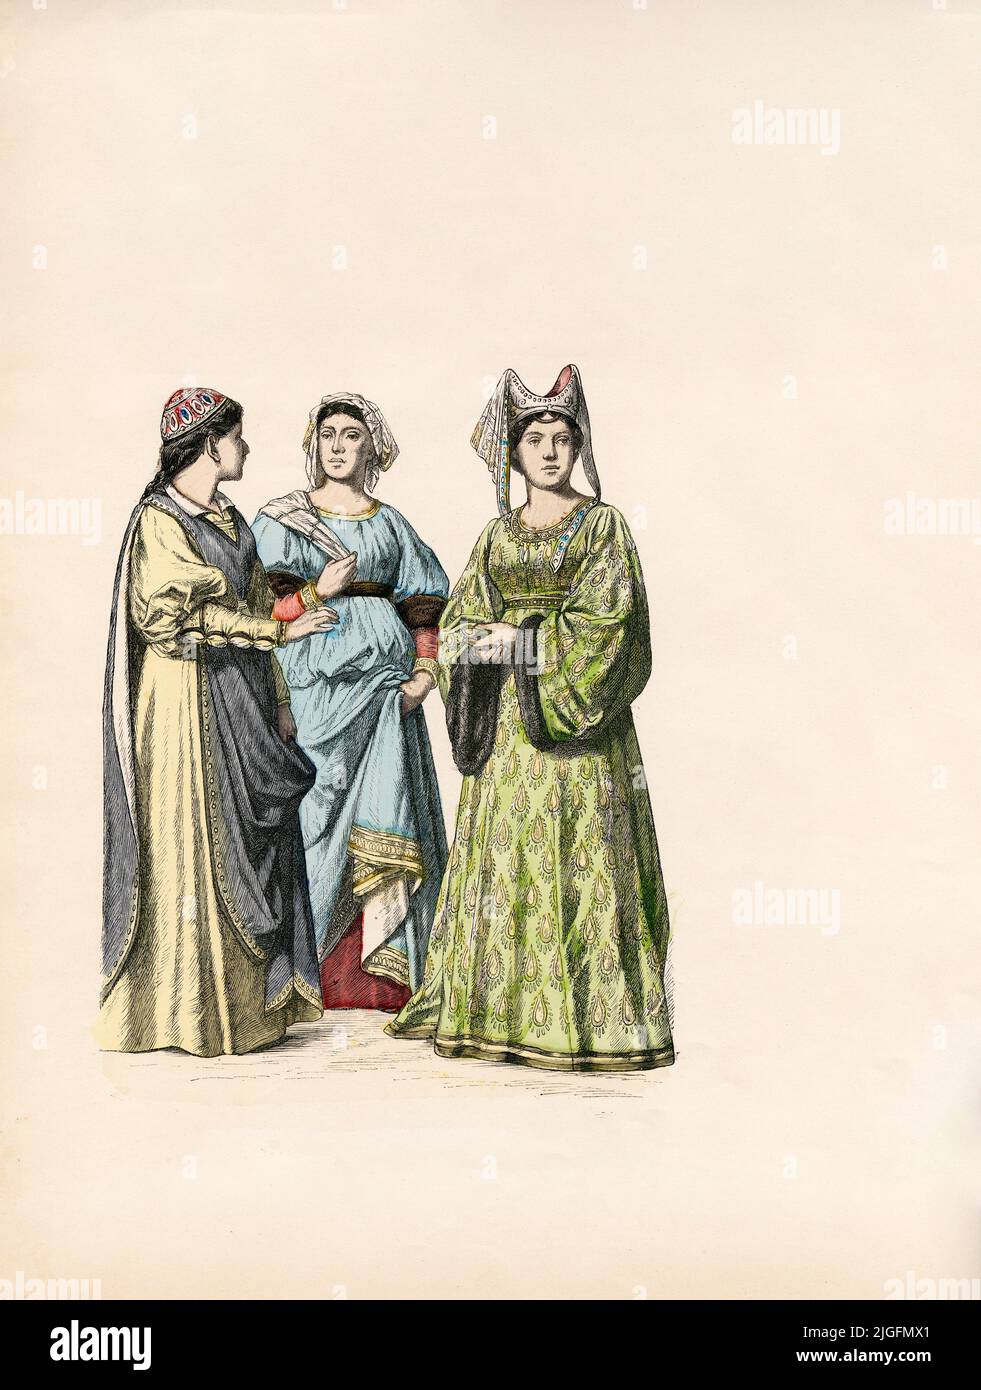 Italienne Girl, noble, Dame de Sienne, Italie, deuxième moitié du siècle 14th, Illustration, l'Histoire du Costume, Braun & Schneider, Munich, Allemagne, 1861-1880 Banque D'Images